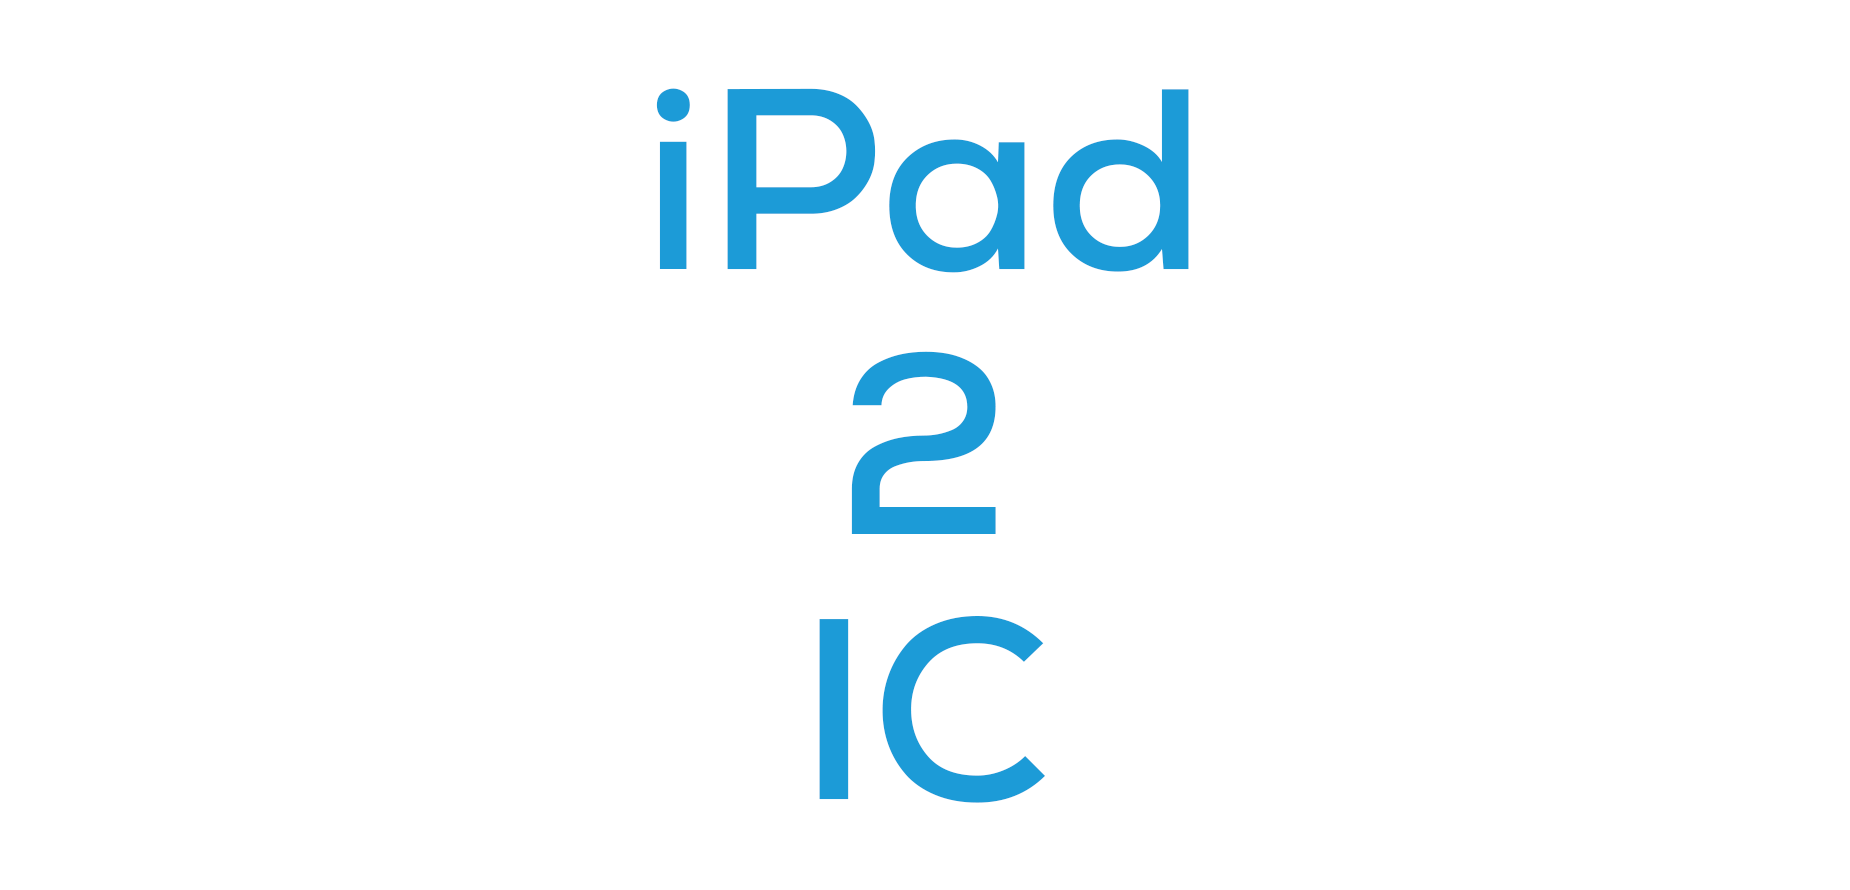 iPad 2 IC